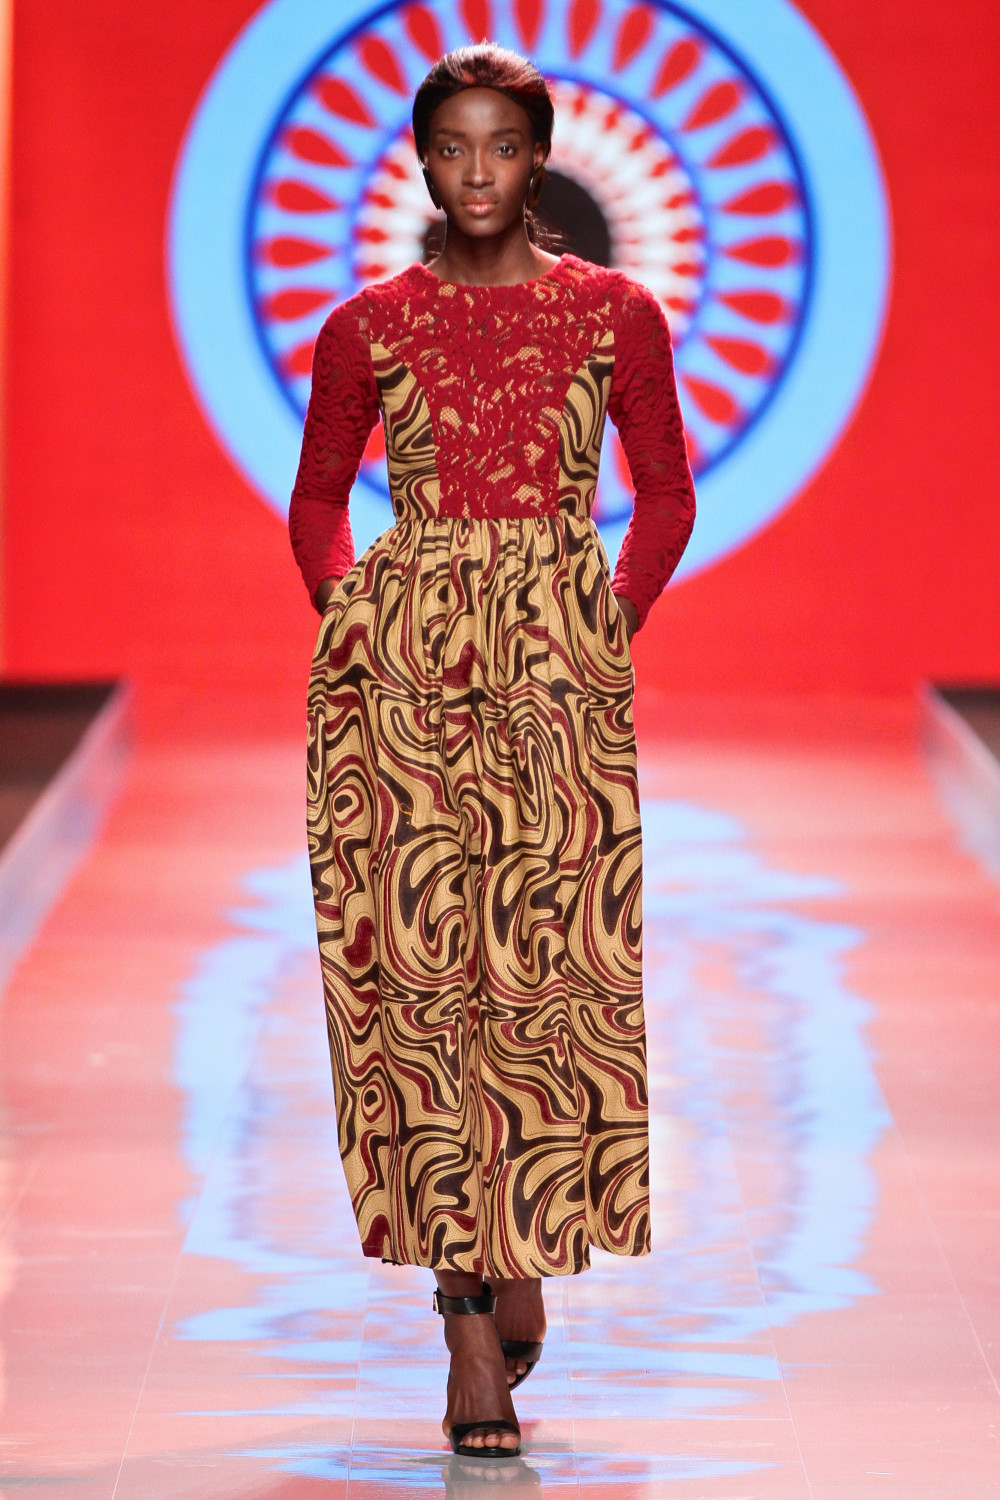 Mercedes Benz Fashion Week Africa 2014 - Day 1: Taibo Bacar - BellaNaija